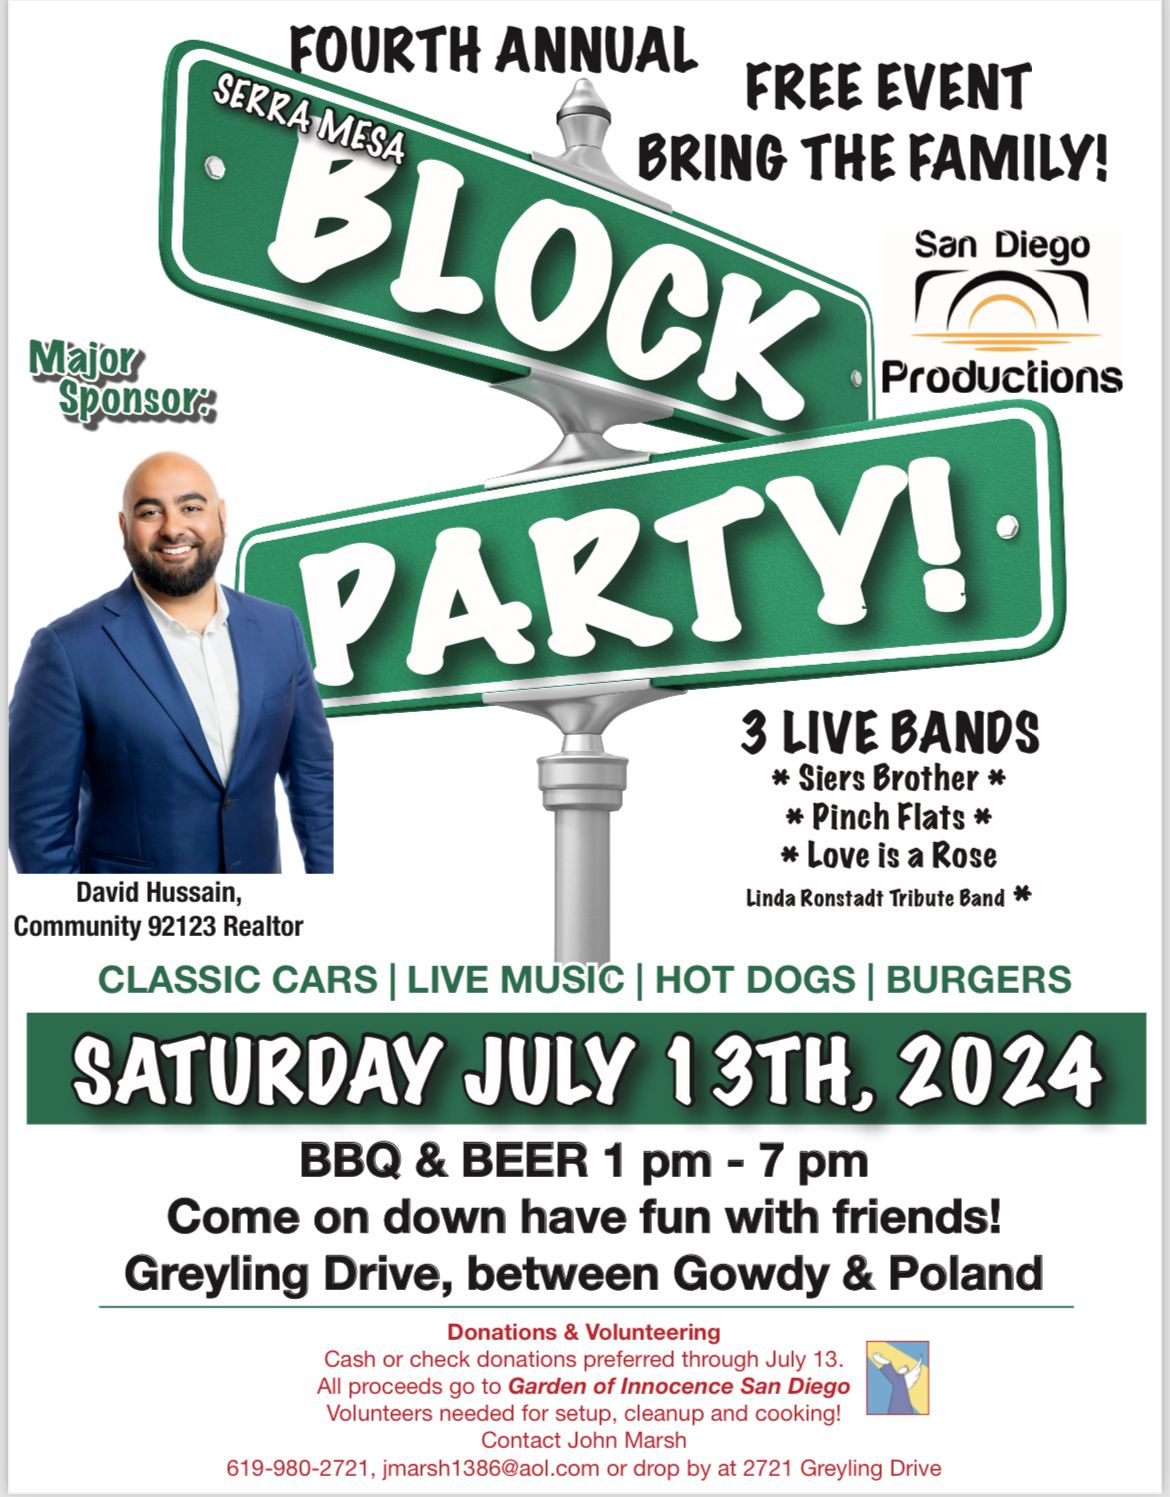 4th Annual Serra Mesa Block Party